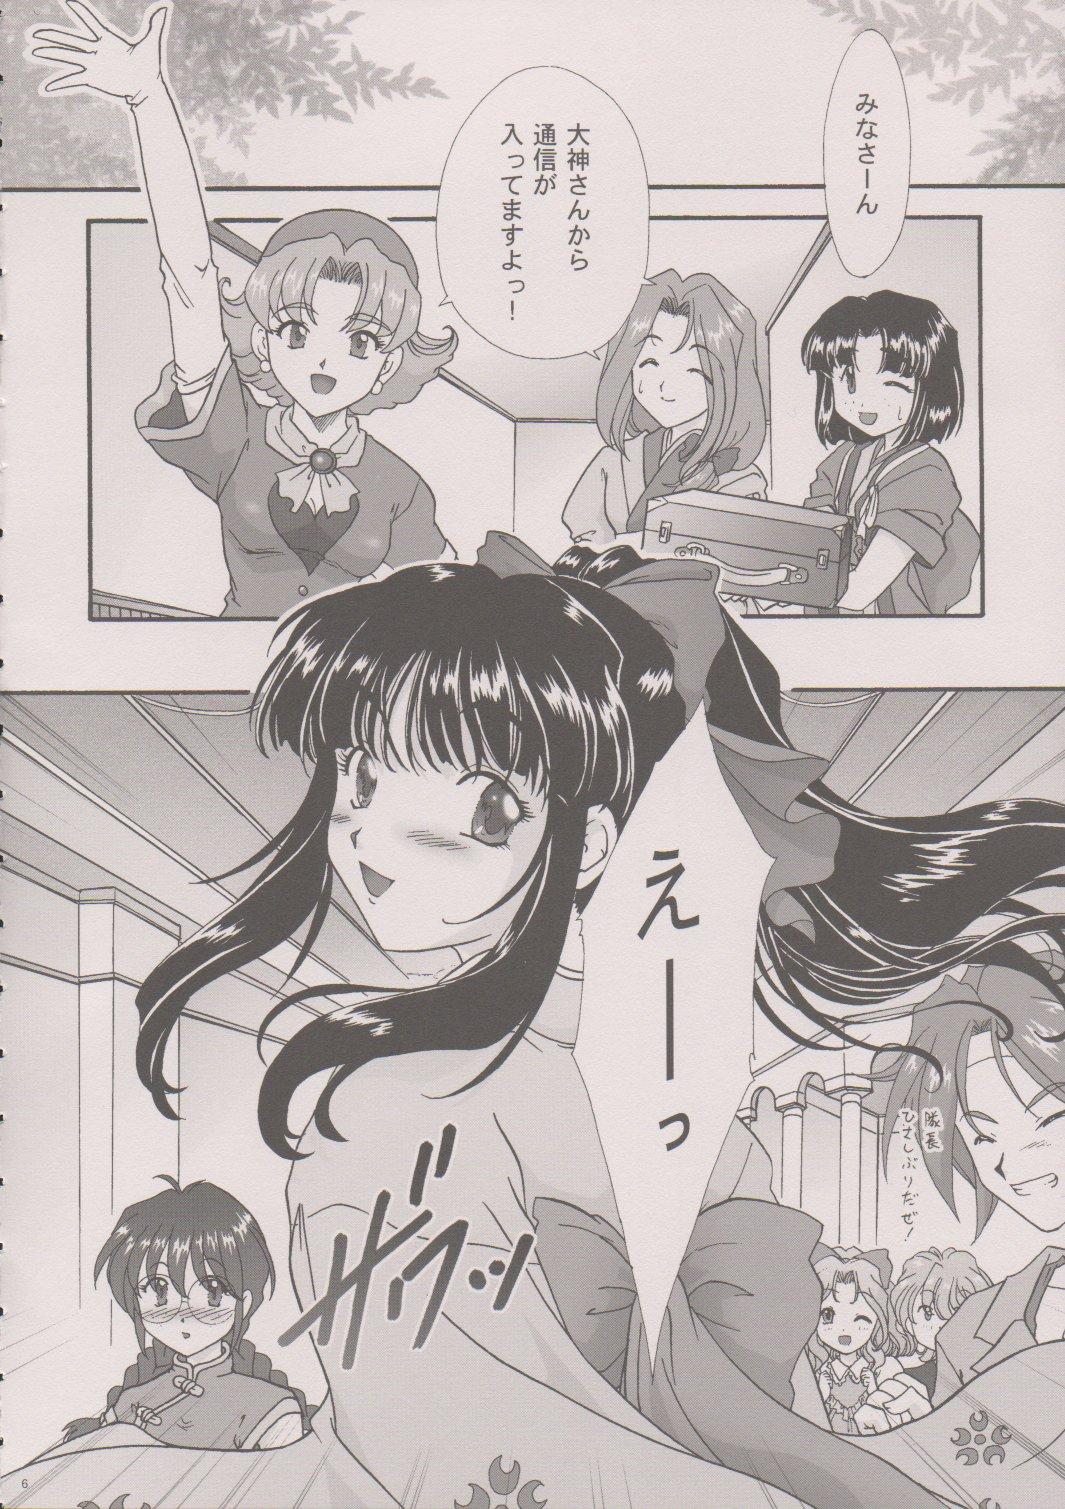 [TSK (Fuuga Utsura)] Maihime ~Karen~ 6 Teito Yori. (Sakura Wars) 4